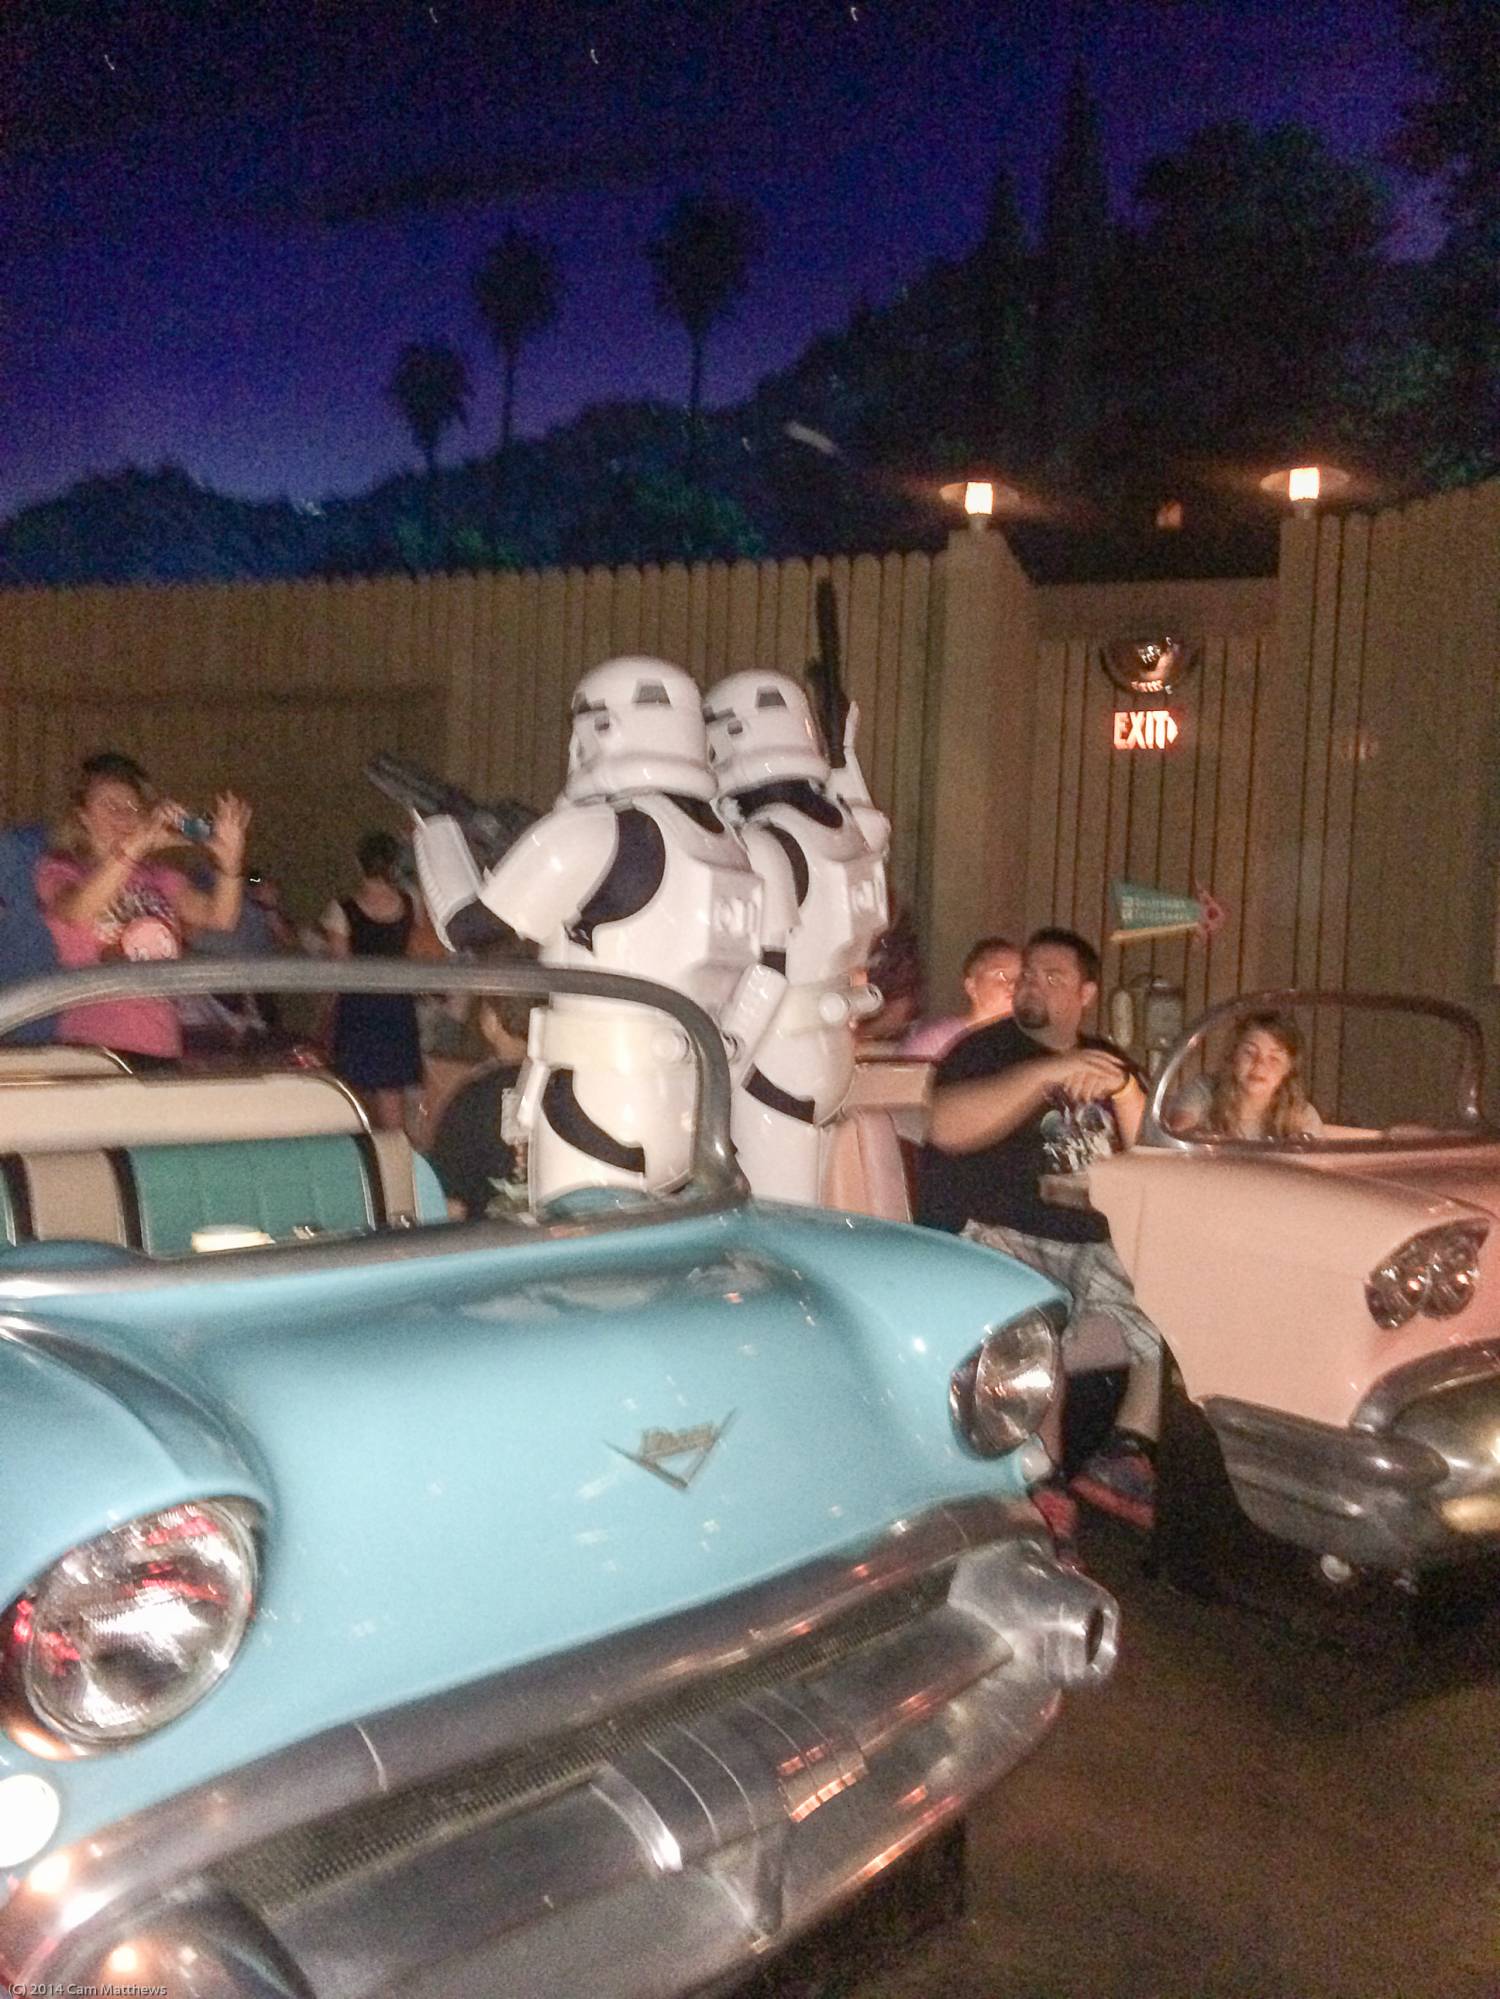 Star Wars Galactic Breakfast 19 Storm Troopers